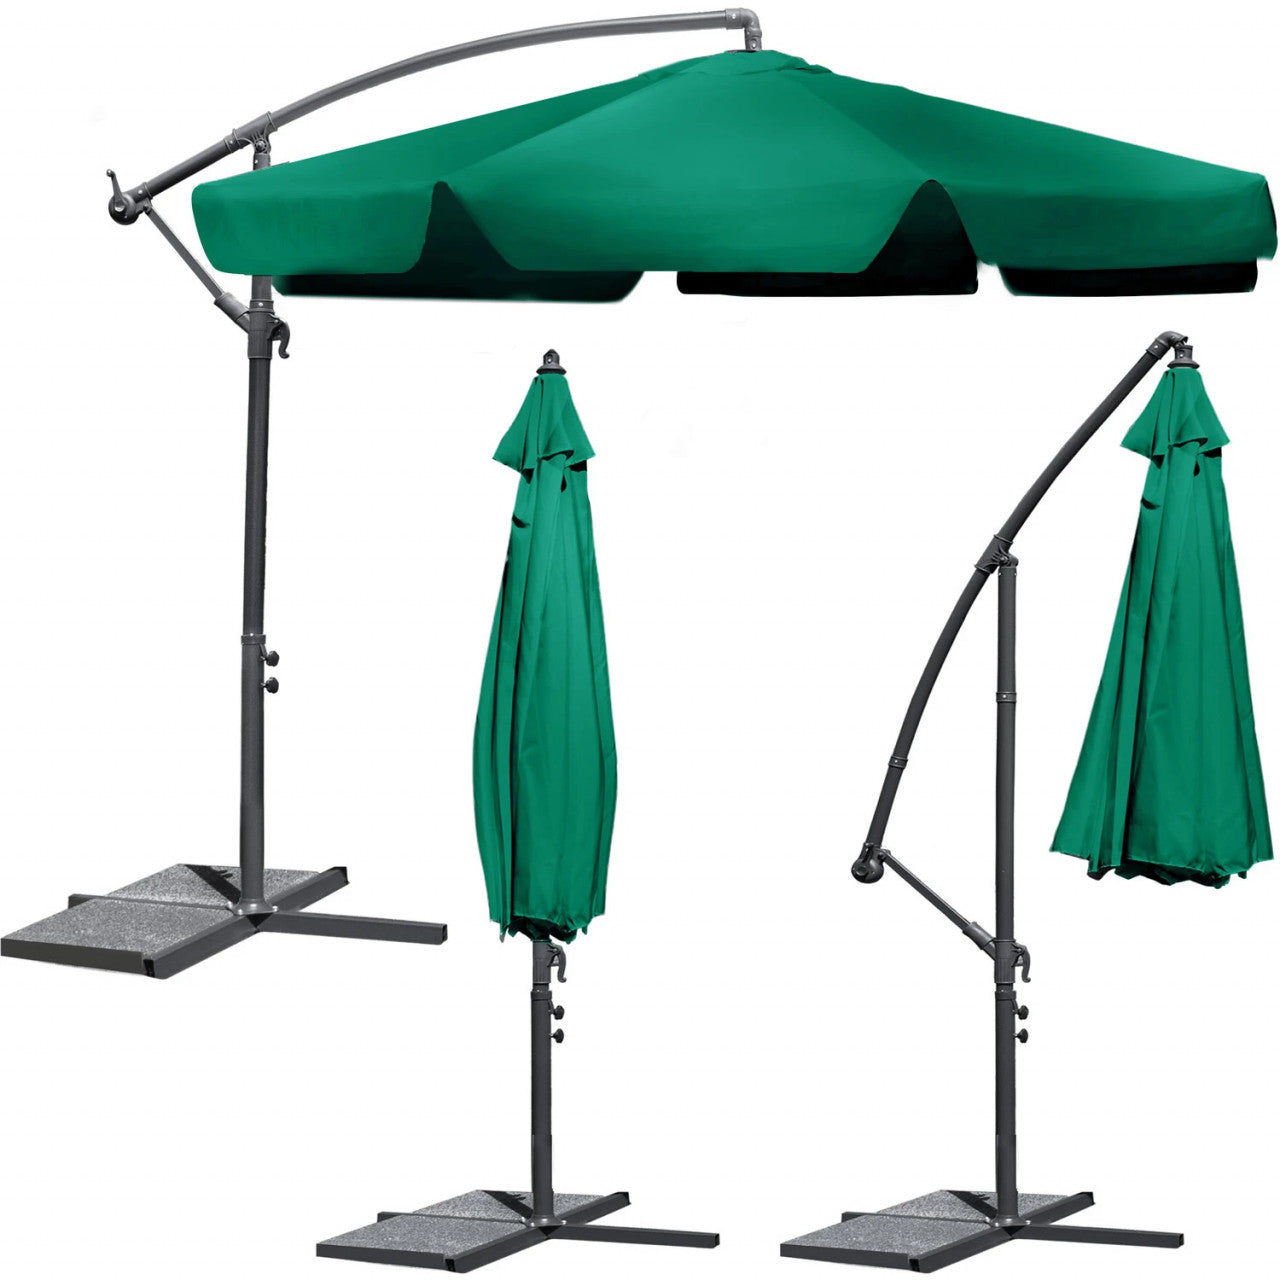 Umbrela de gradina, Plonos, pliabila, impermeabila, cu 6 segmente, brat reglabil, 350 x 250 cm, Verde